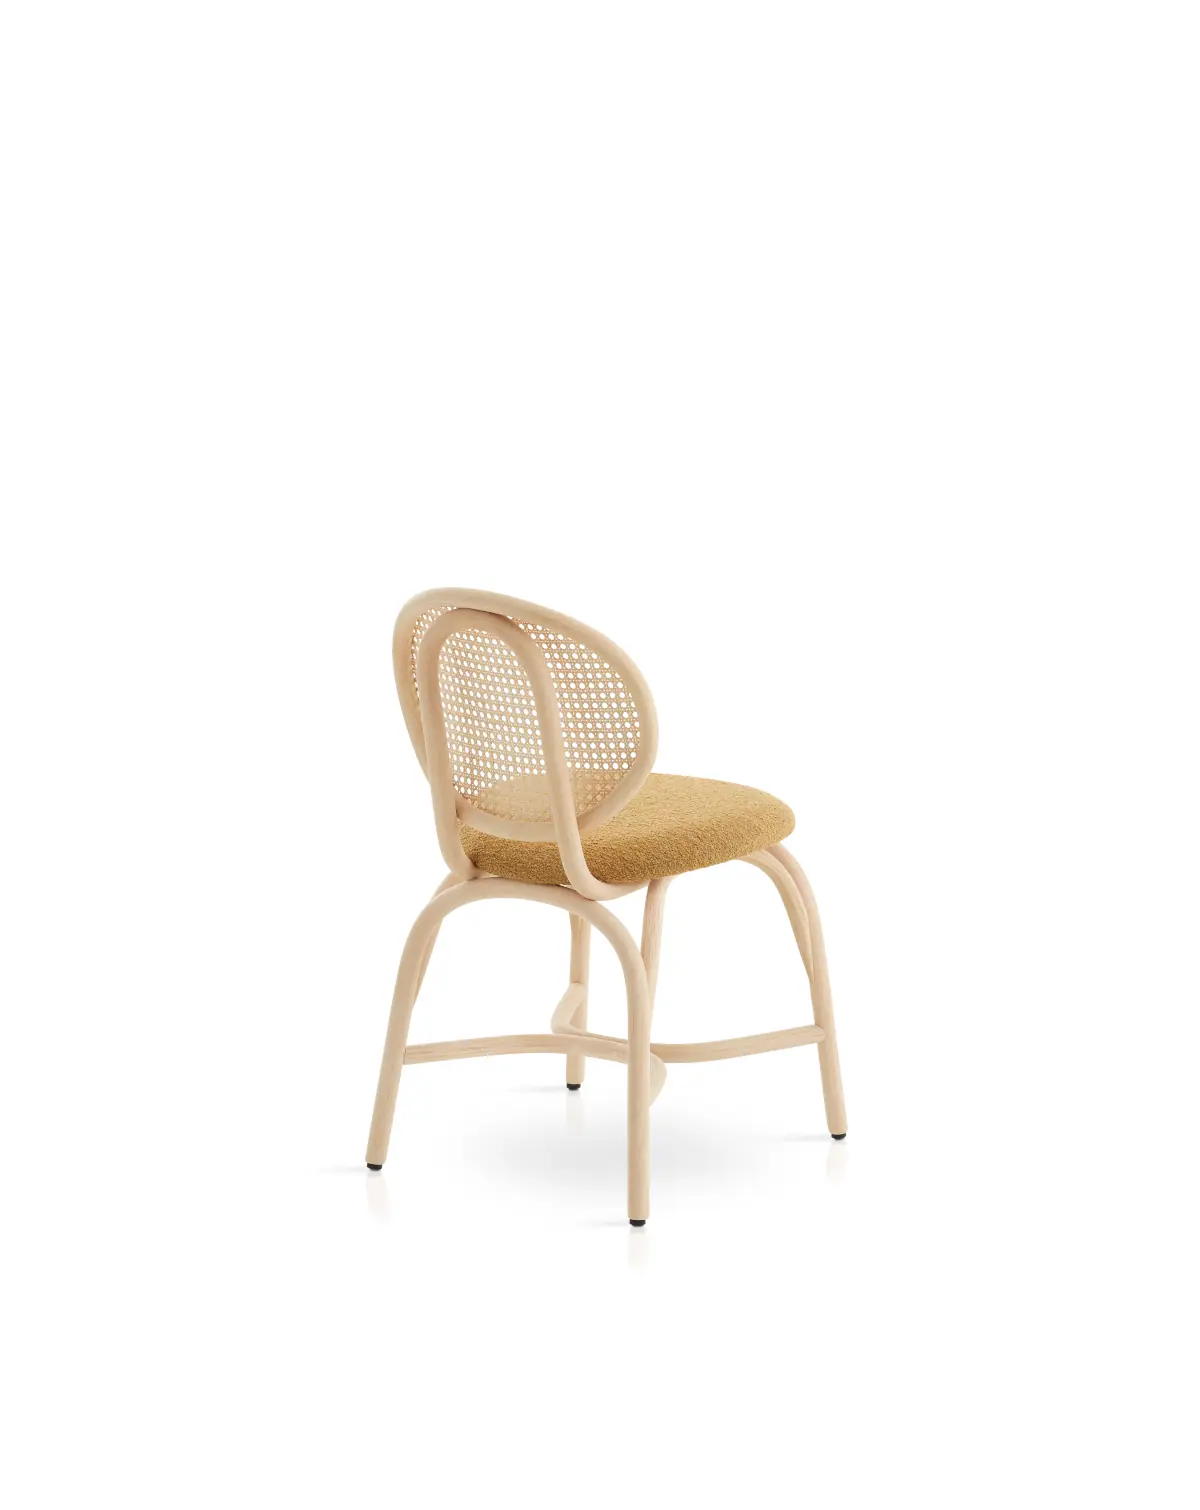 84084-84080-loop-chair